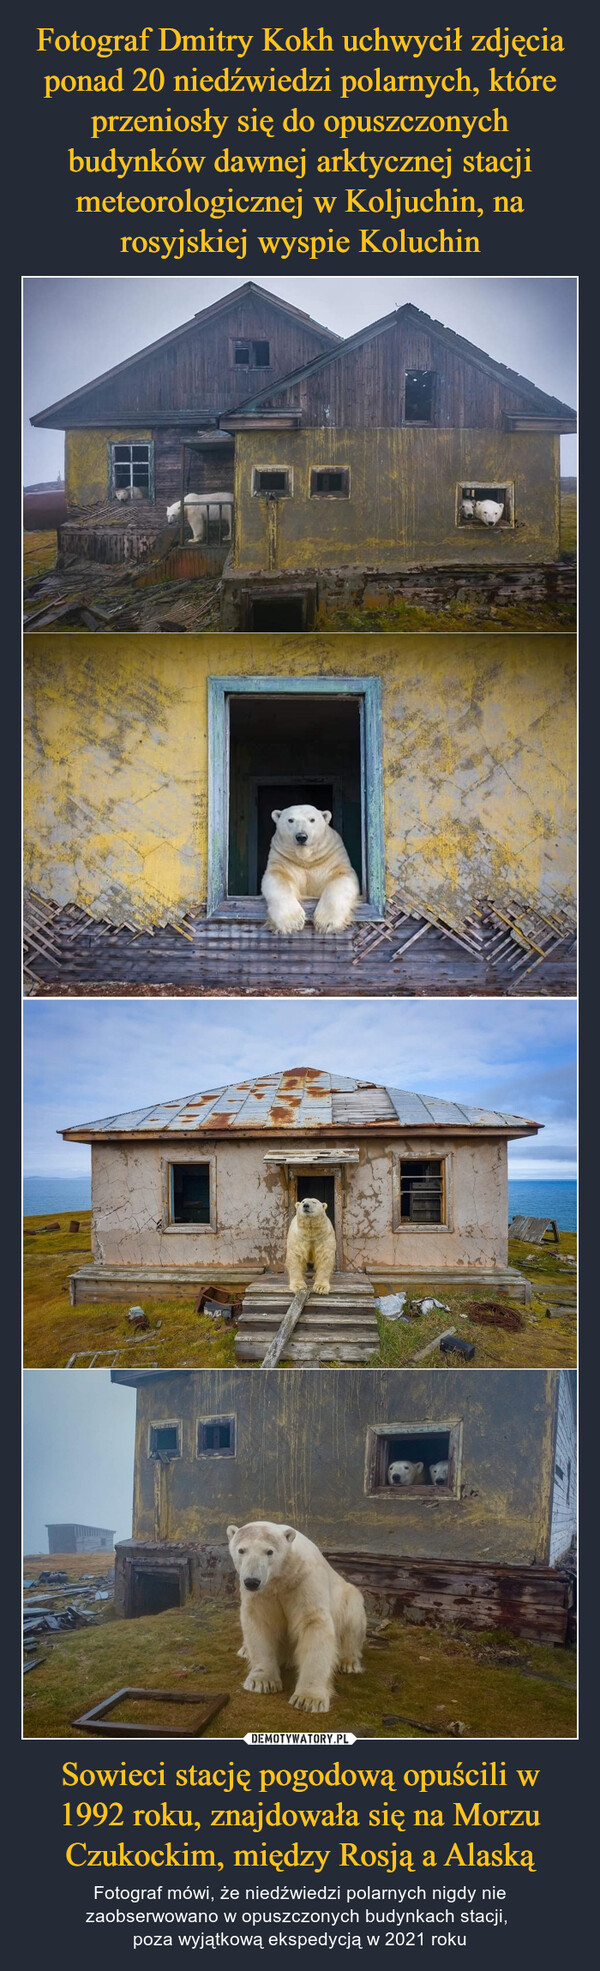 Sowieci stację pogodową opuścili w 1992 roku, znajdowała się na Morzu Czukockim, między Rosją a Alaską – Fotograf mówi, że niedźwiedzi polarnych nigdy nie zaobserwowano w opuszczonych budynkach stacji, poza wyjątkową ekspedycją w 2021 roku 